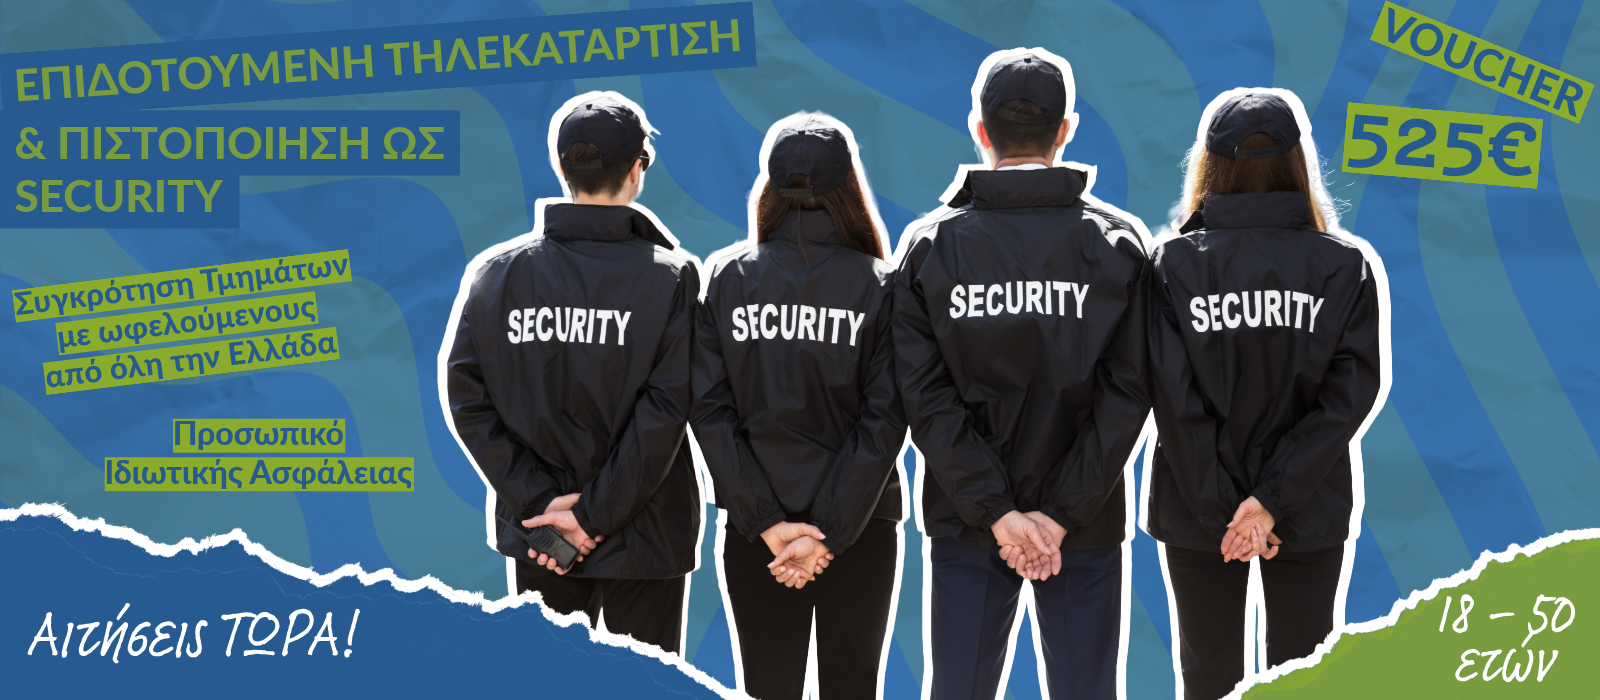 Επιδοτούμενη Τηλεκατάρτιση & Πιστοποίηση για Ανέργους από 18 – 50 ετών ως Προσωπικό Ιδιωτικής Ασφάλειας (Security)